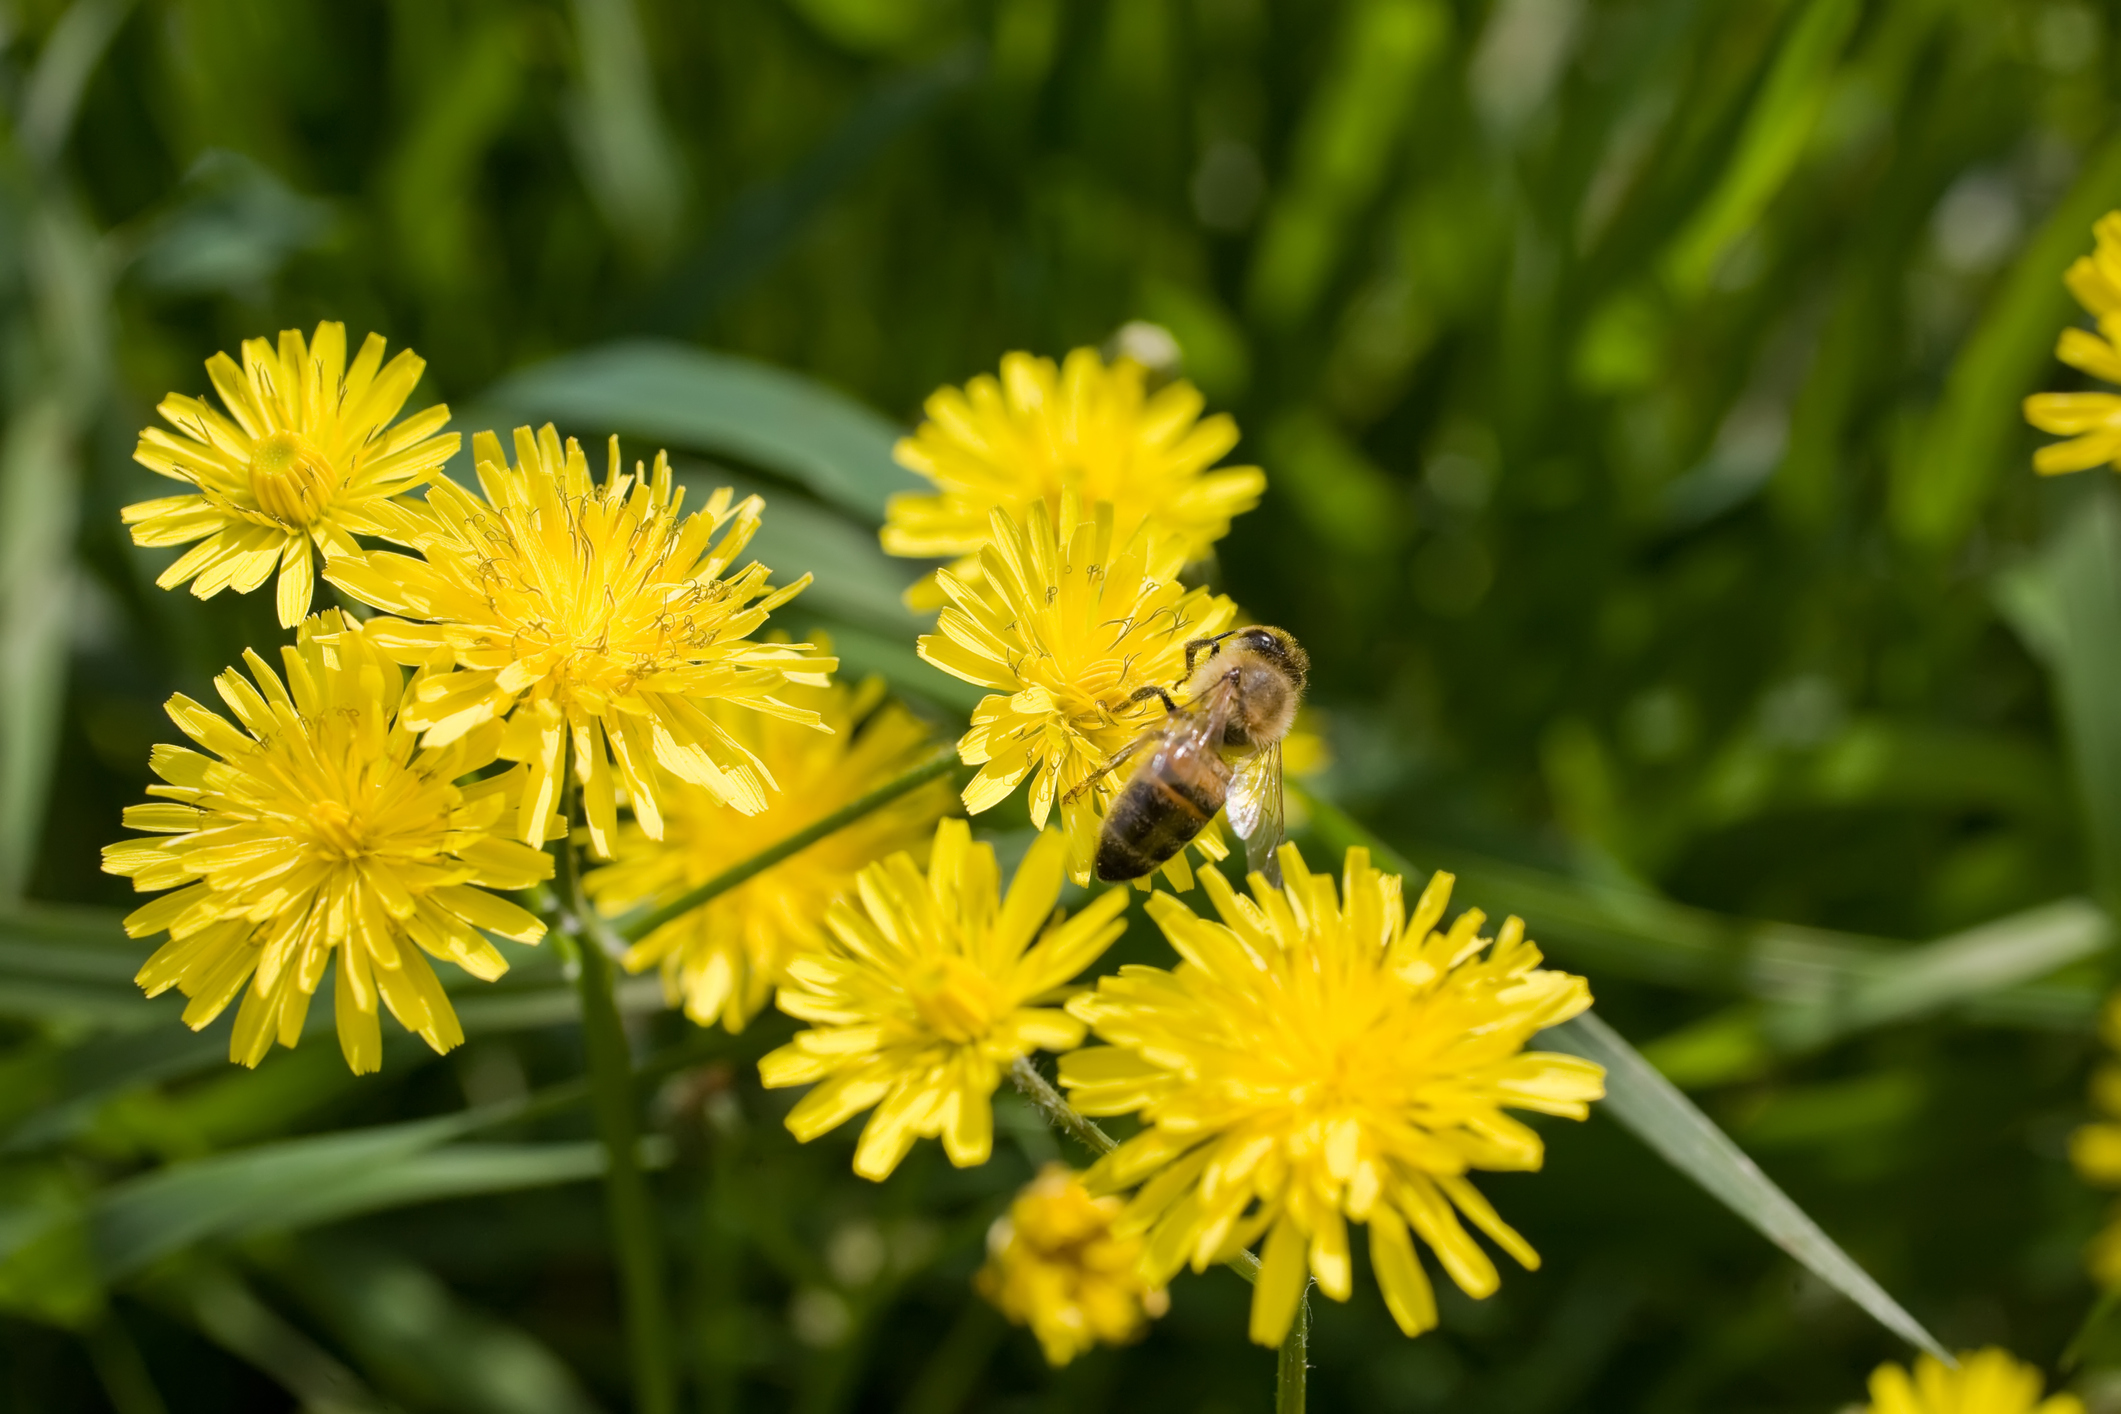 Les pissenlits ne sont pas que de la mauvaise herbe! Leur nectar est utilisé par les abeilles pour produire le miel.